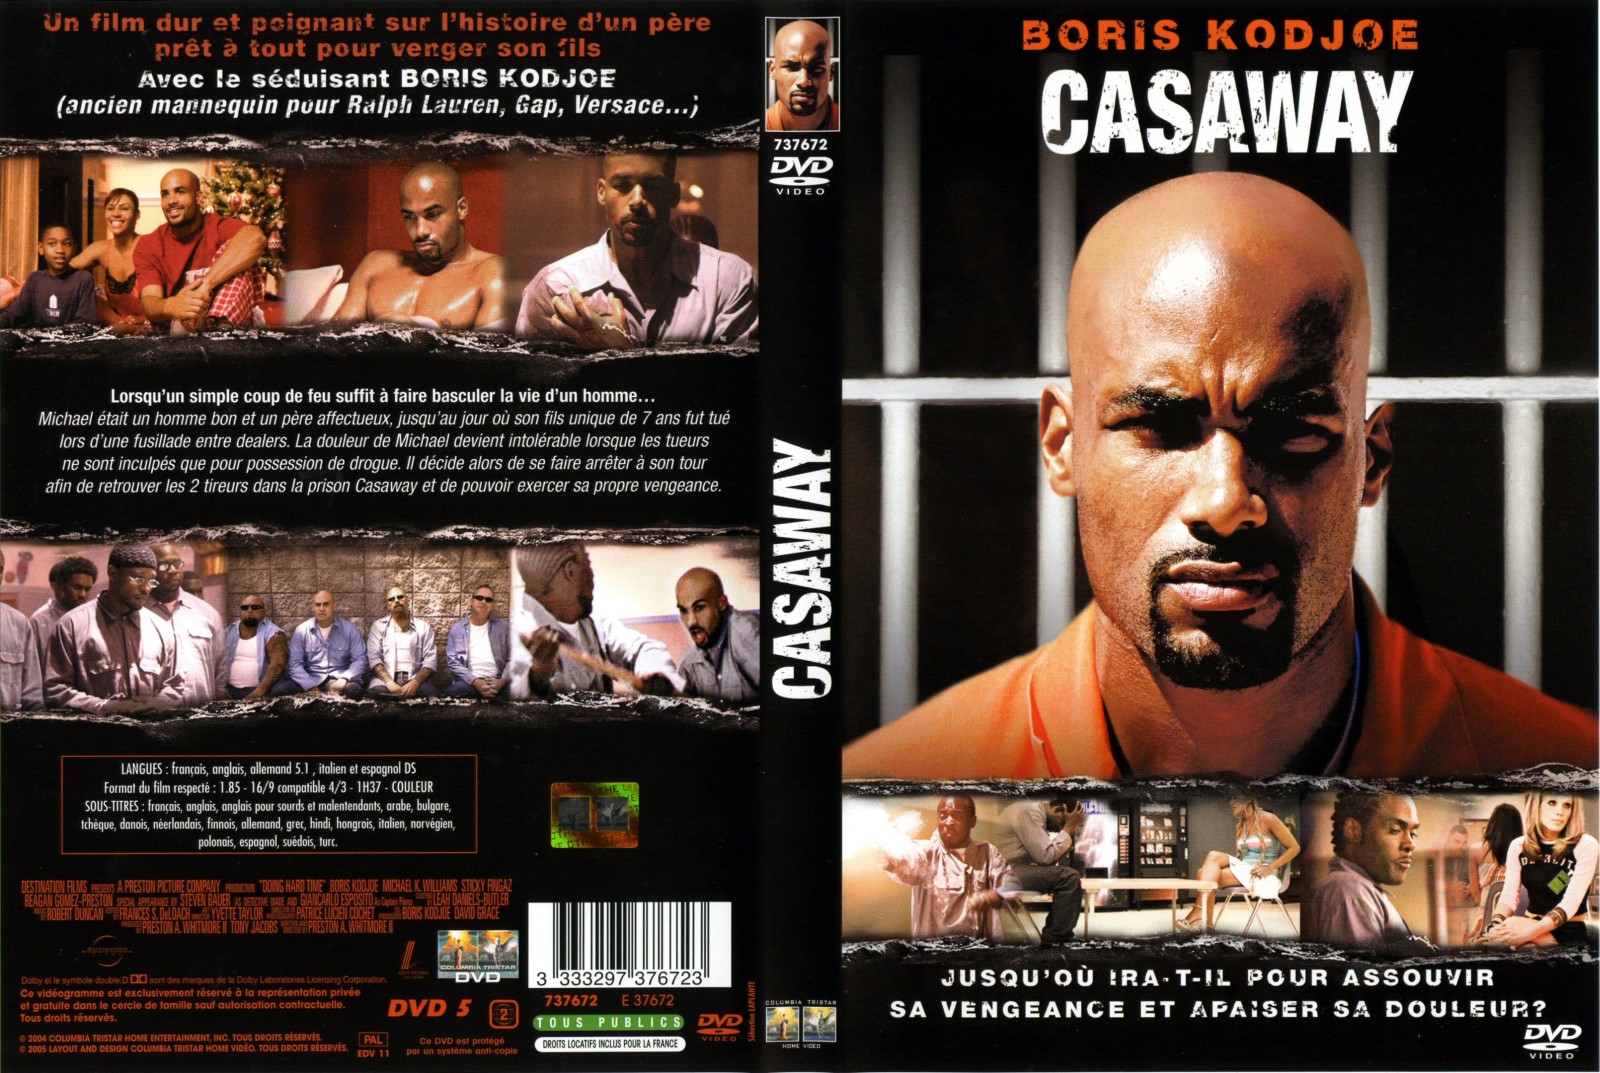 Jaquette DVD Casaway